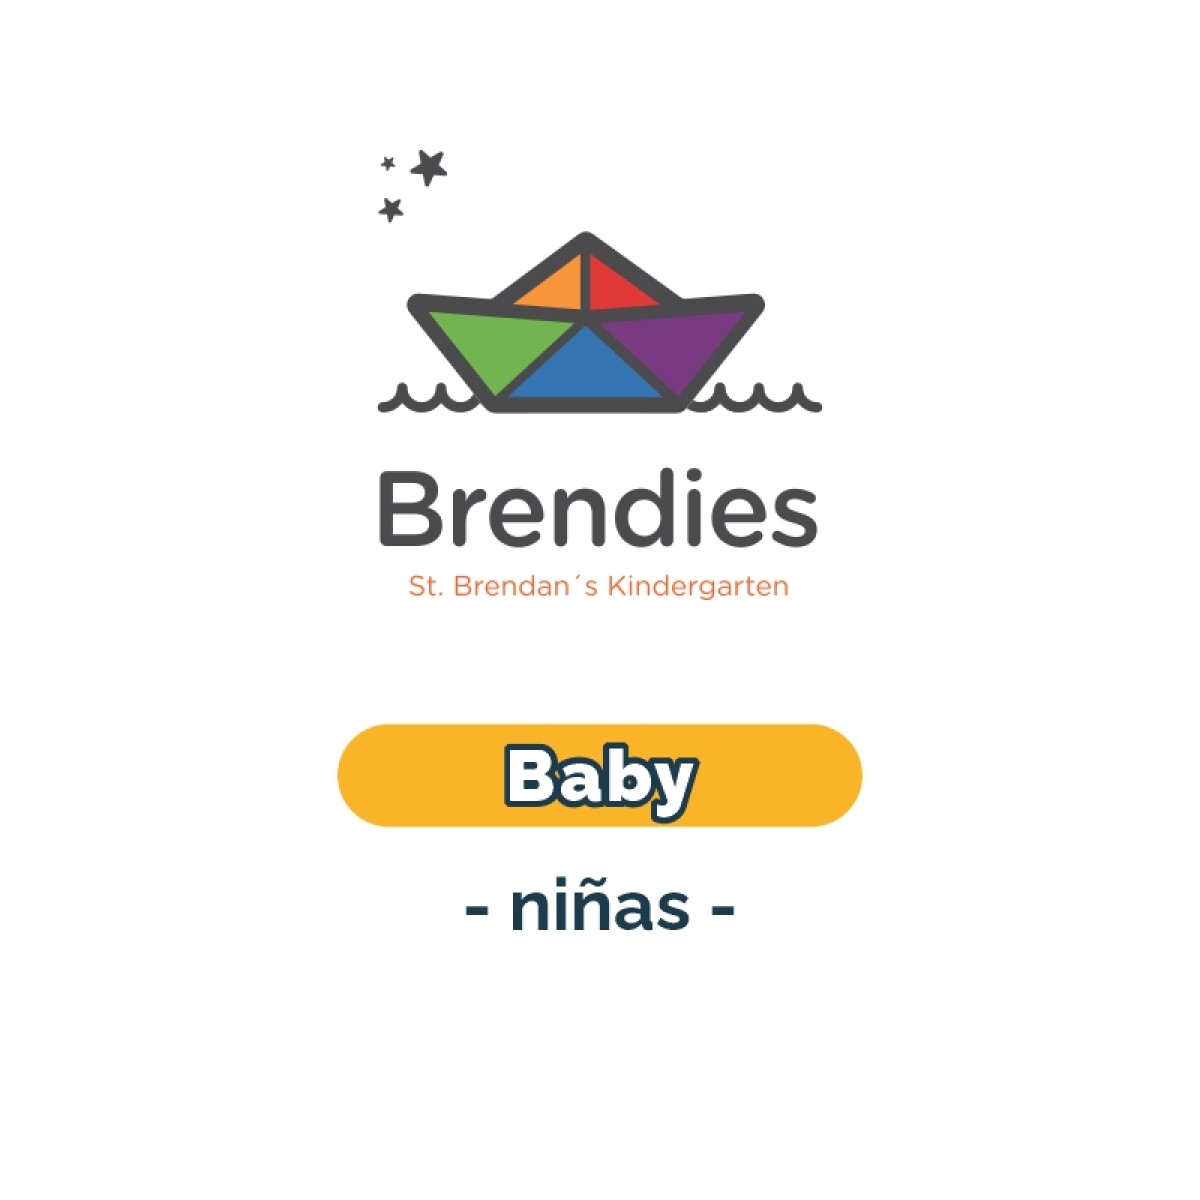 Lista de materiales - Brendies Baby niñas SB 